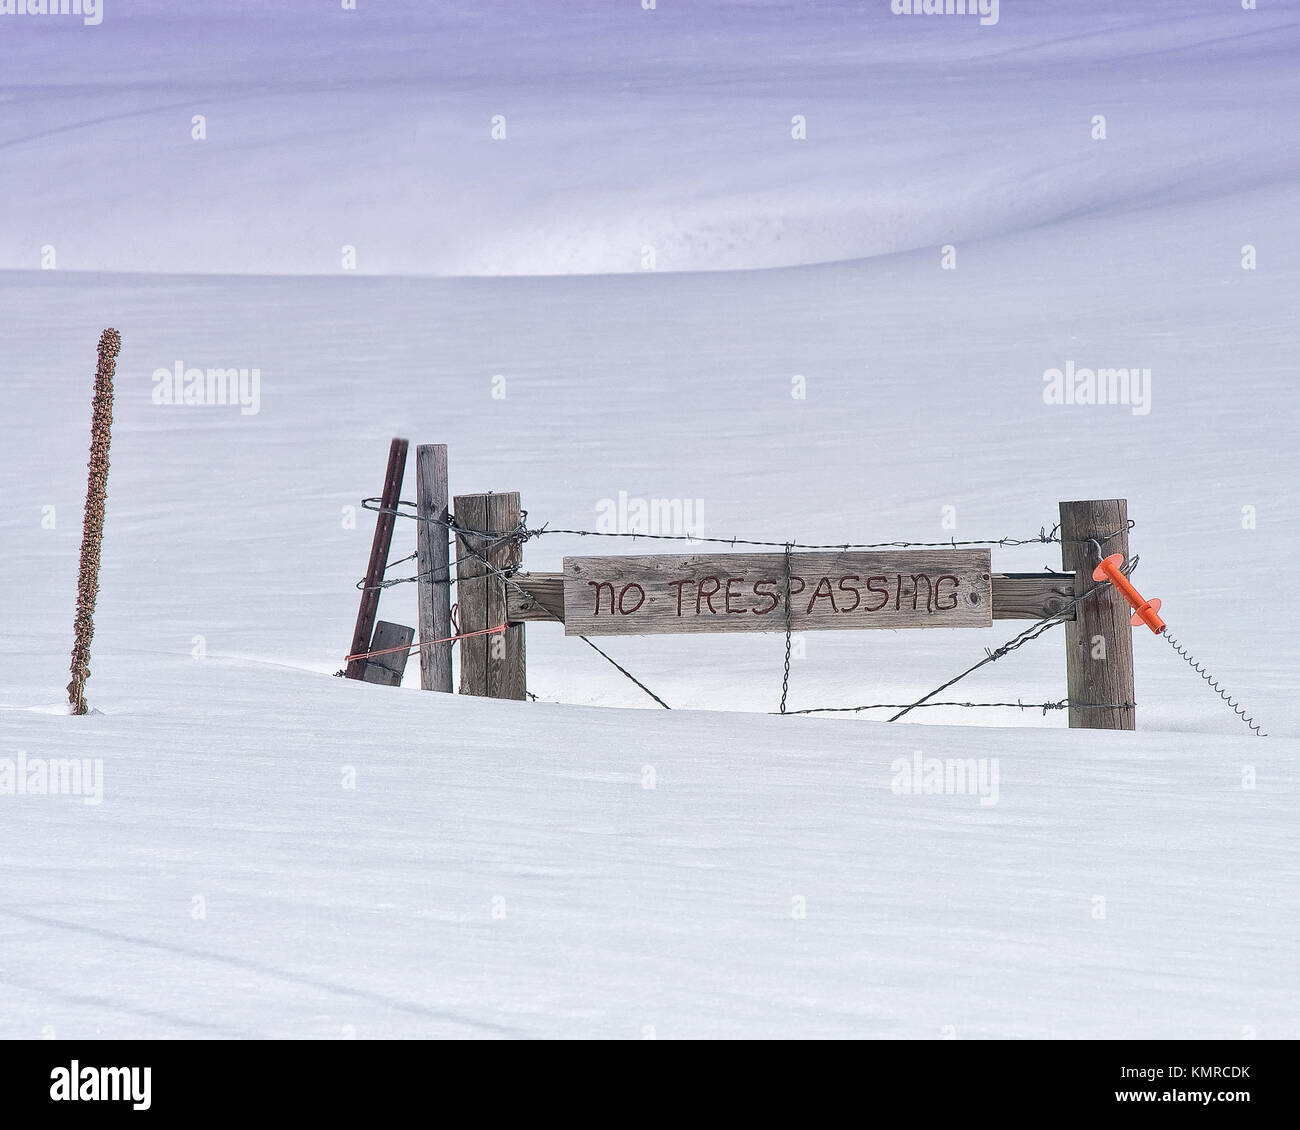 No hay signo de allanamiento en una profunda Snow Drift alto en las Montañas Rocosas Foto de stock